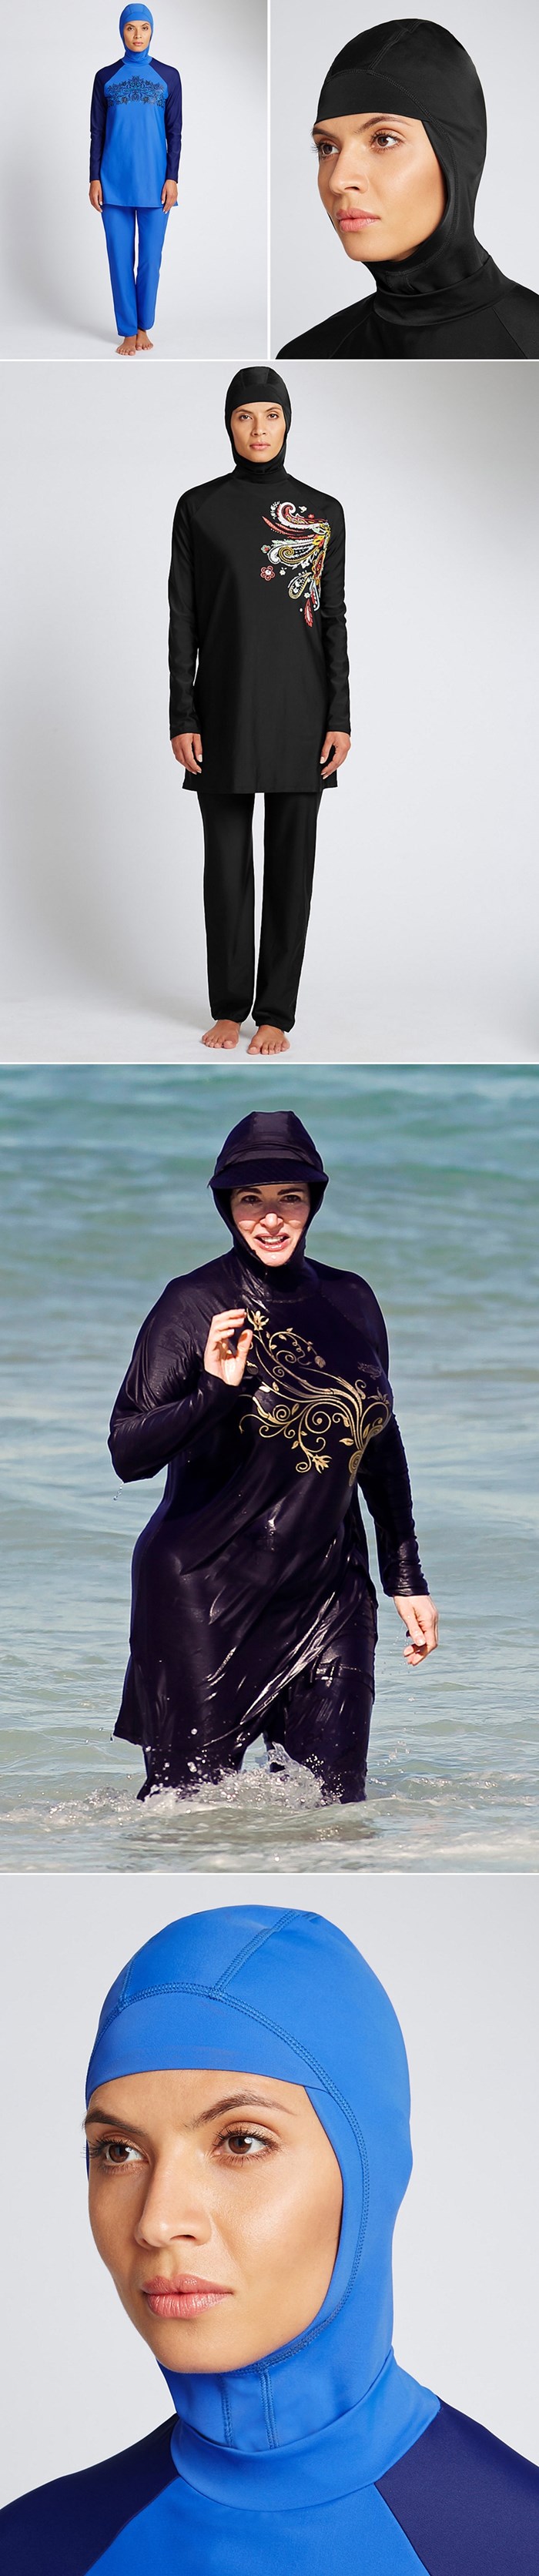 "BURKINI" OSVAJA SVIJET: Muslimanke se zaželjele mode na plaži